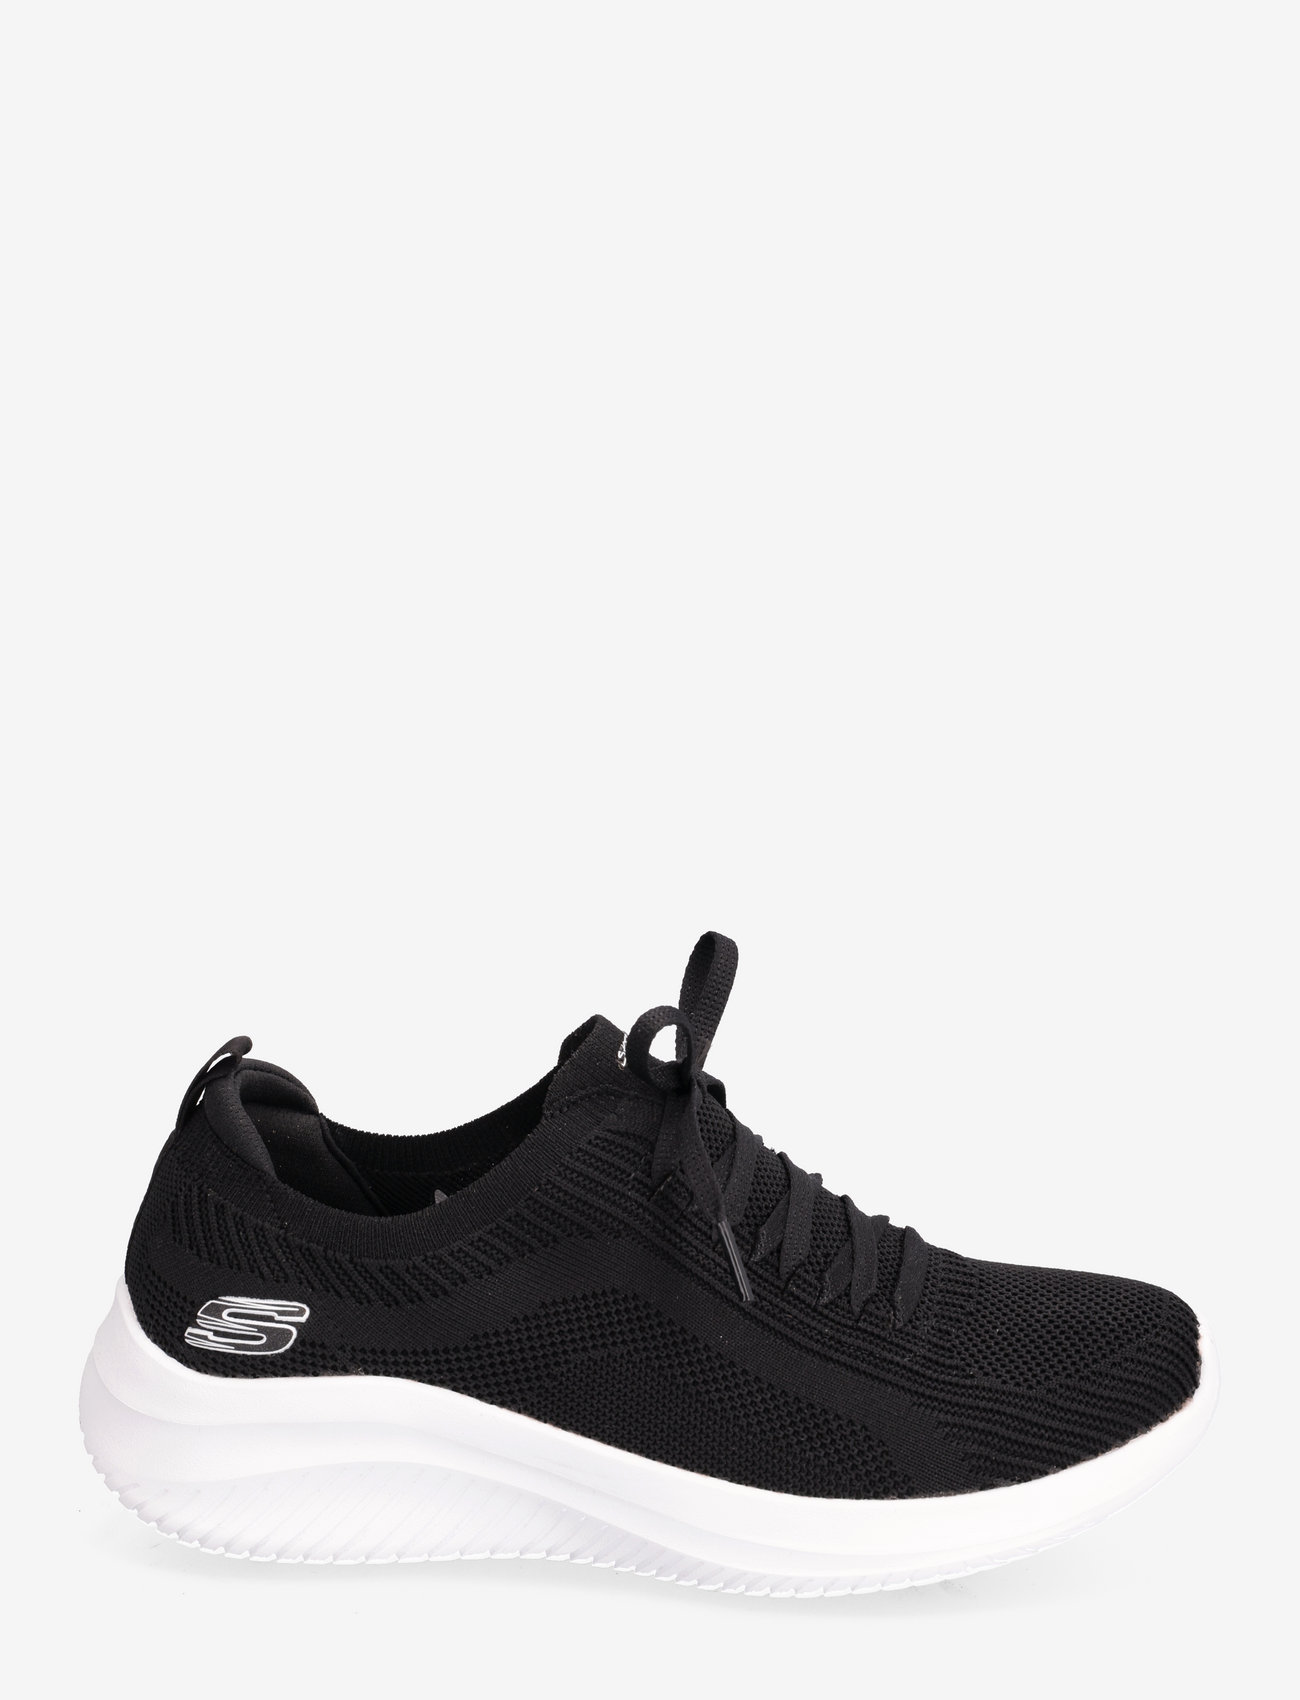 Skechers - Womens Ultra Flex 3.0  - Big Plan - sneakers med lavt skaft - bkw black white - 1